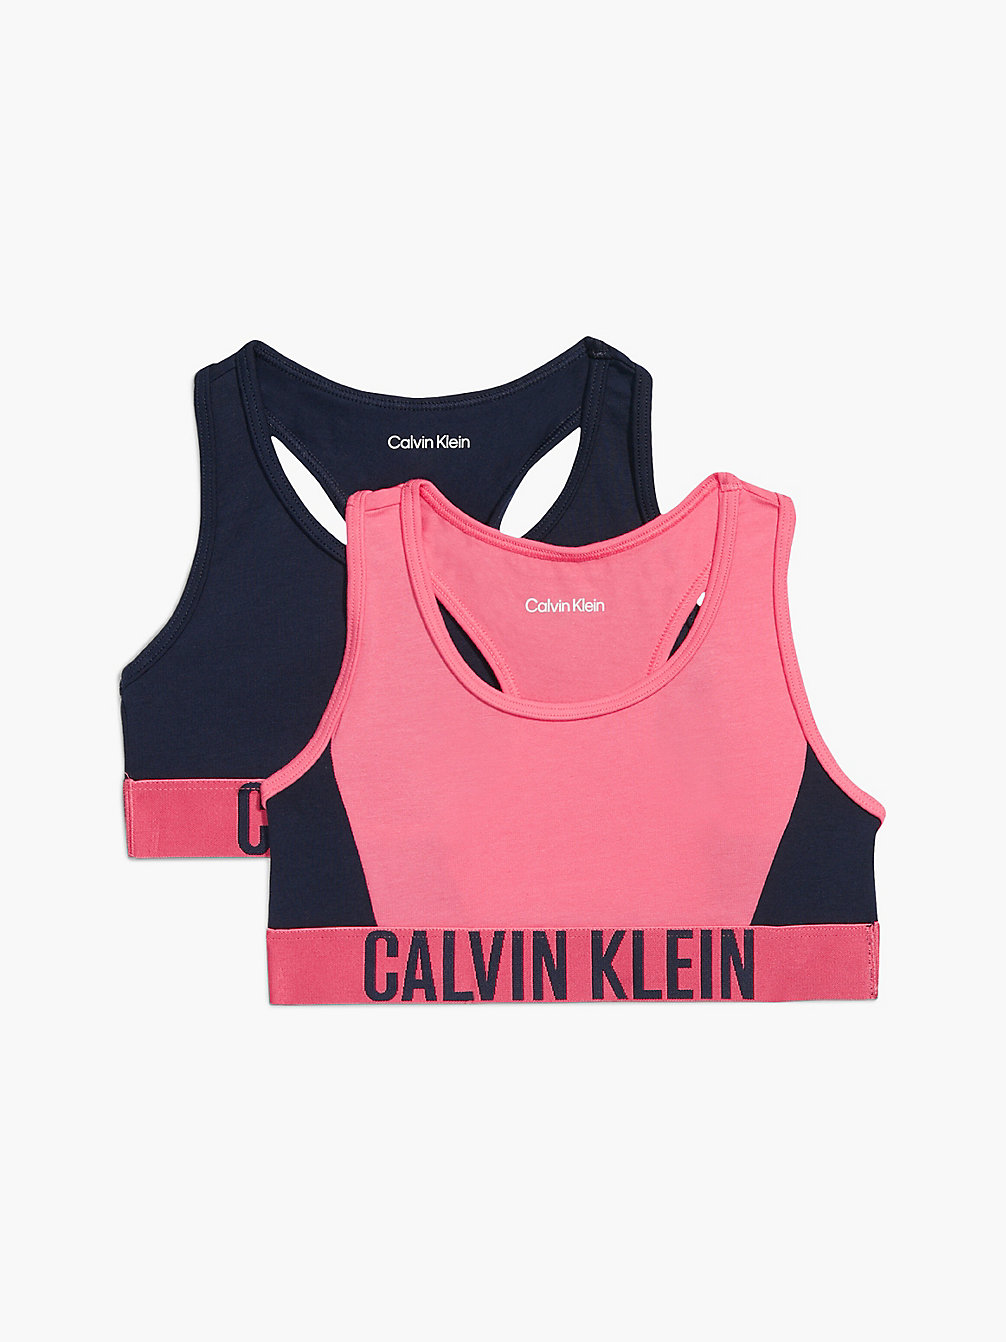 PINKDAWN/NAVYIRIS 2er-Pack Bralettes Für Mädchen – Intense Power undefined girls Calvin Klein